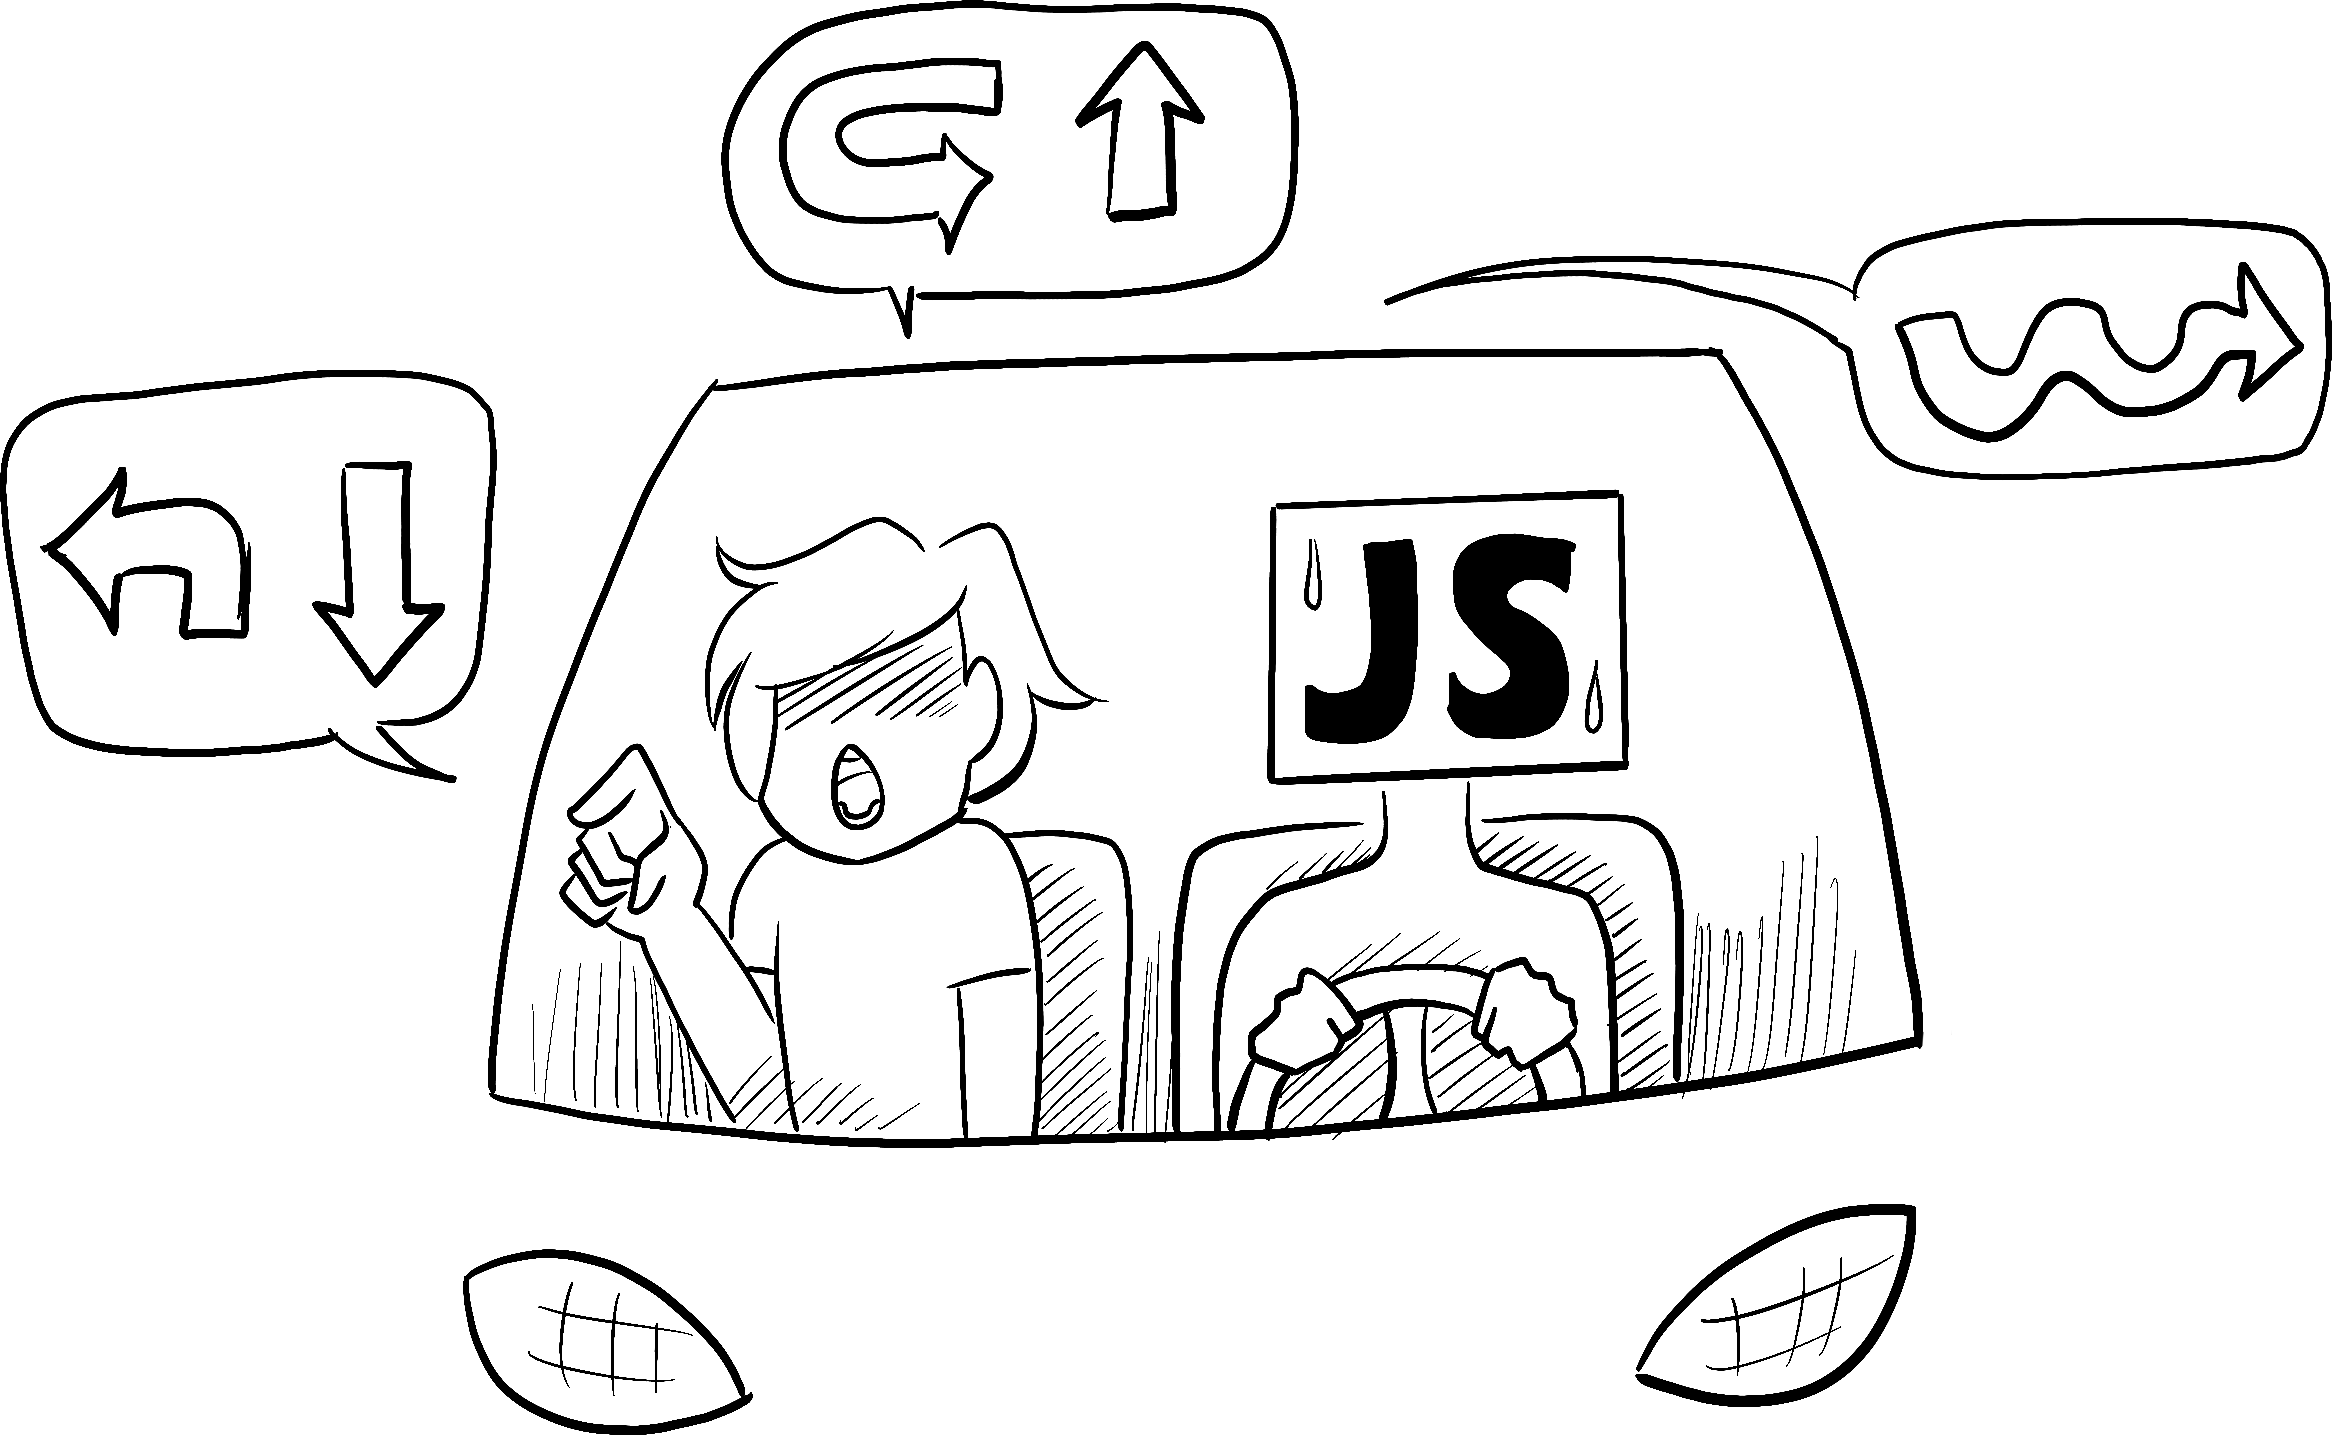 Em um carro dirigido por uma pessoa de aparência ansiosa que representa o JavaScript, um passageiro ordena que o motorista execute uma sequência de complicadas navegações curva à curva.